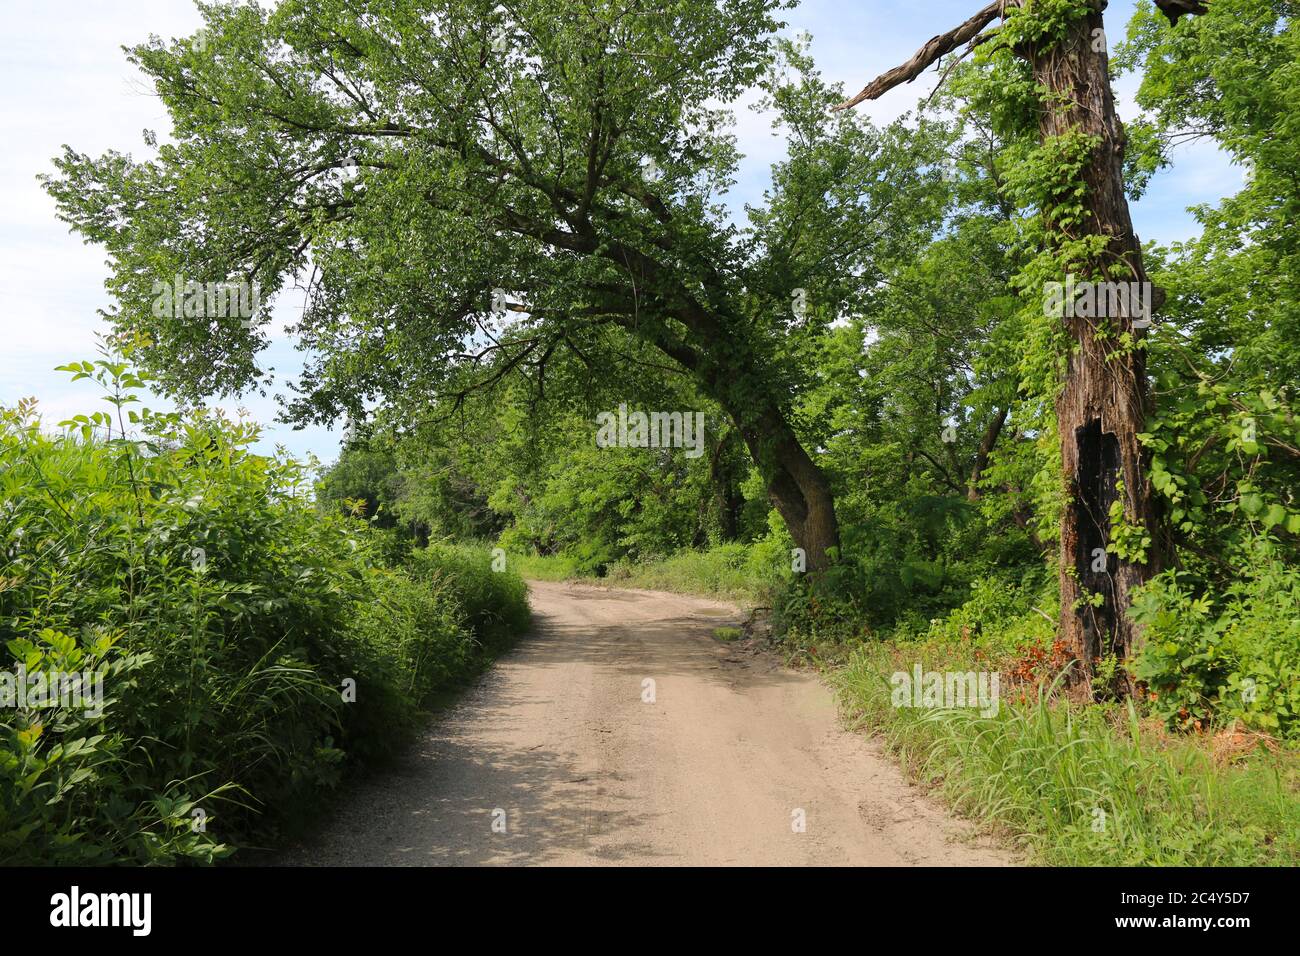 una bella strada sterrata alberata con alberi a strapiombo in una giornata di sole Foto Stock